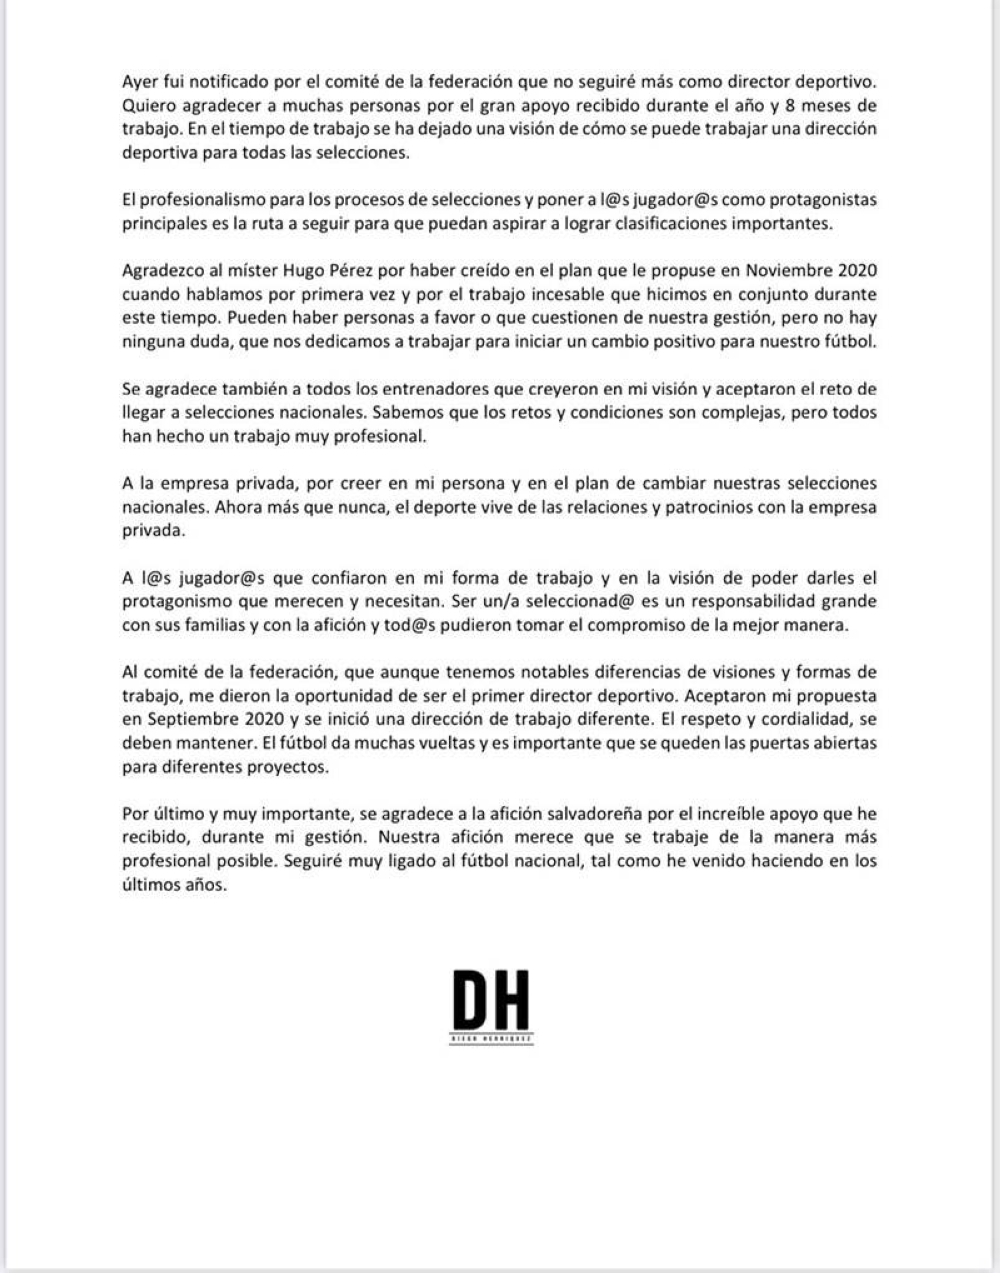 Este es el comunicado de despedida que publicó Diego Henríquez en sus redes sociales.